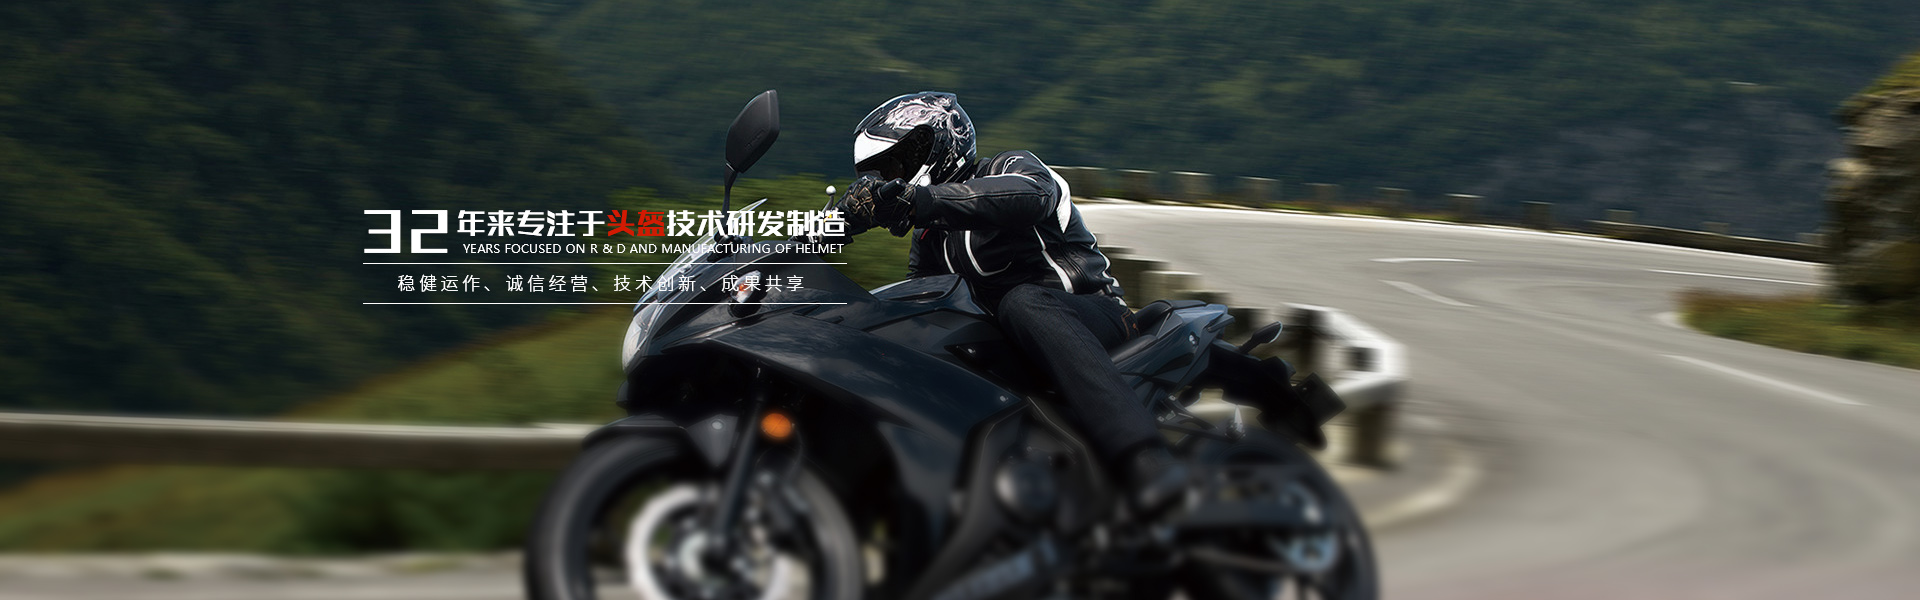  Motorcycle helmet manufacturer